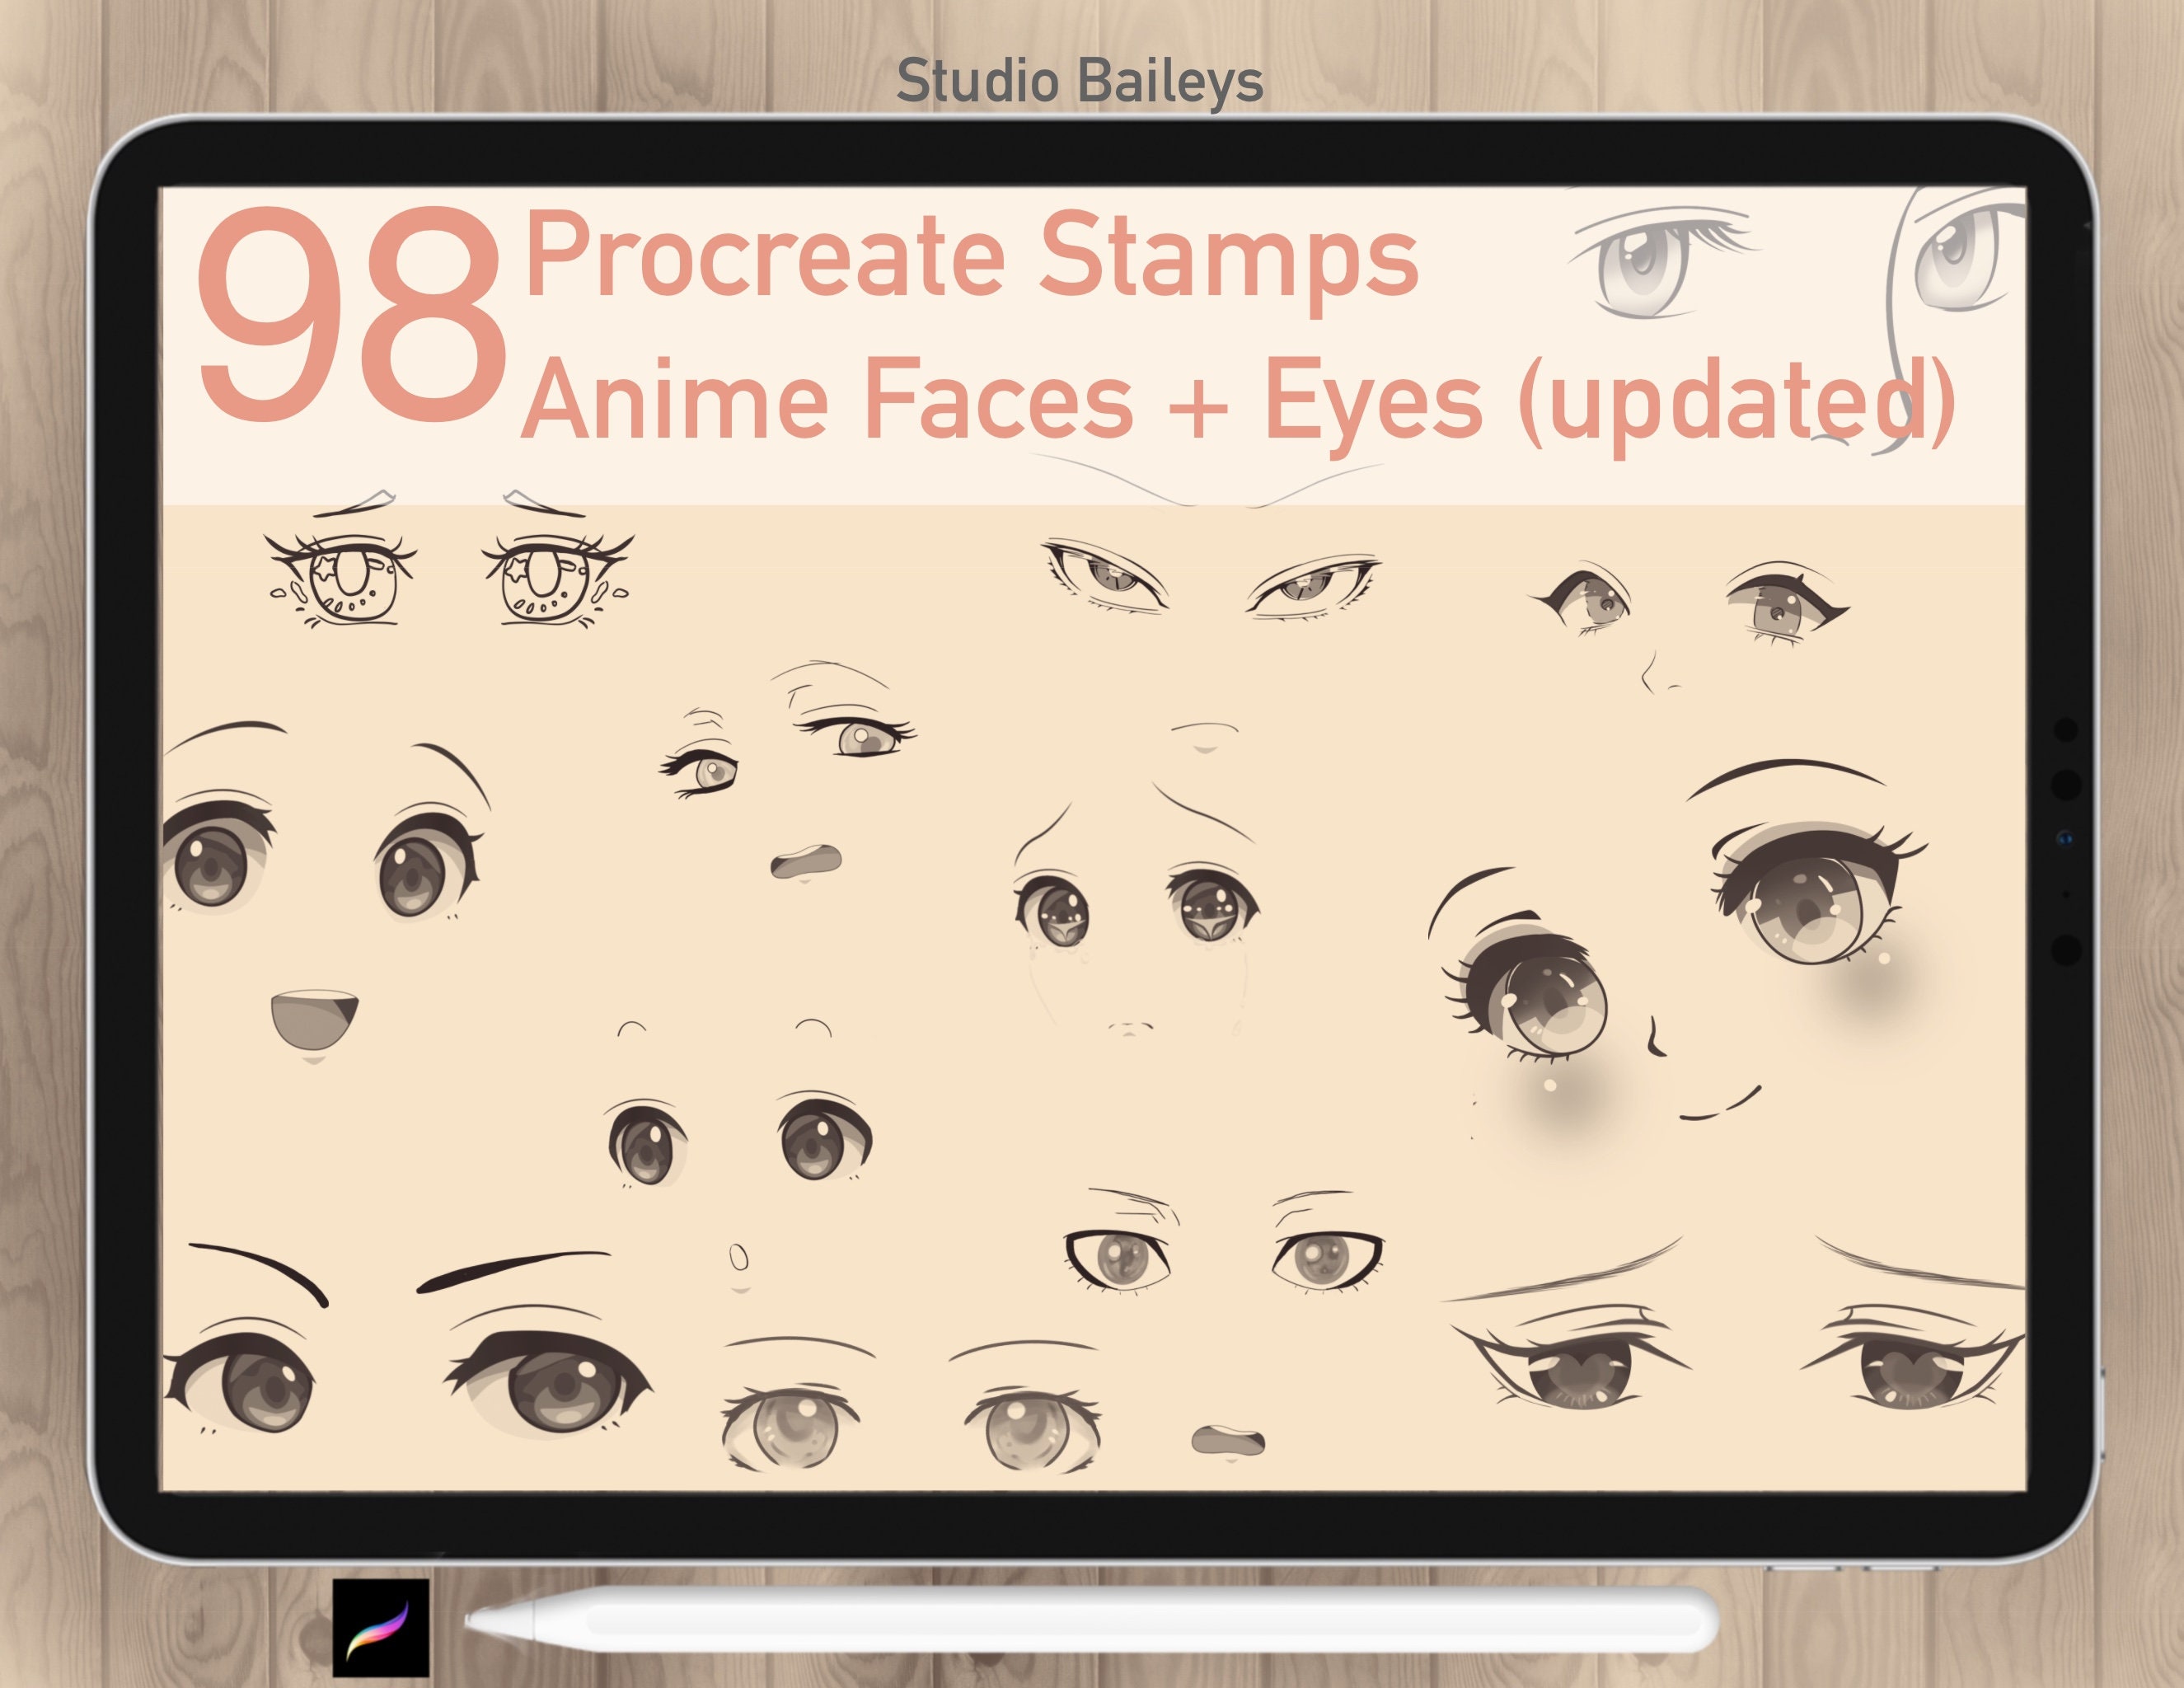 conjunto de olhos de estilo anime de desenho animado 14718629